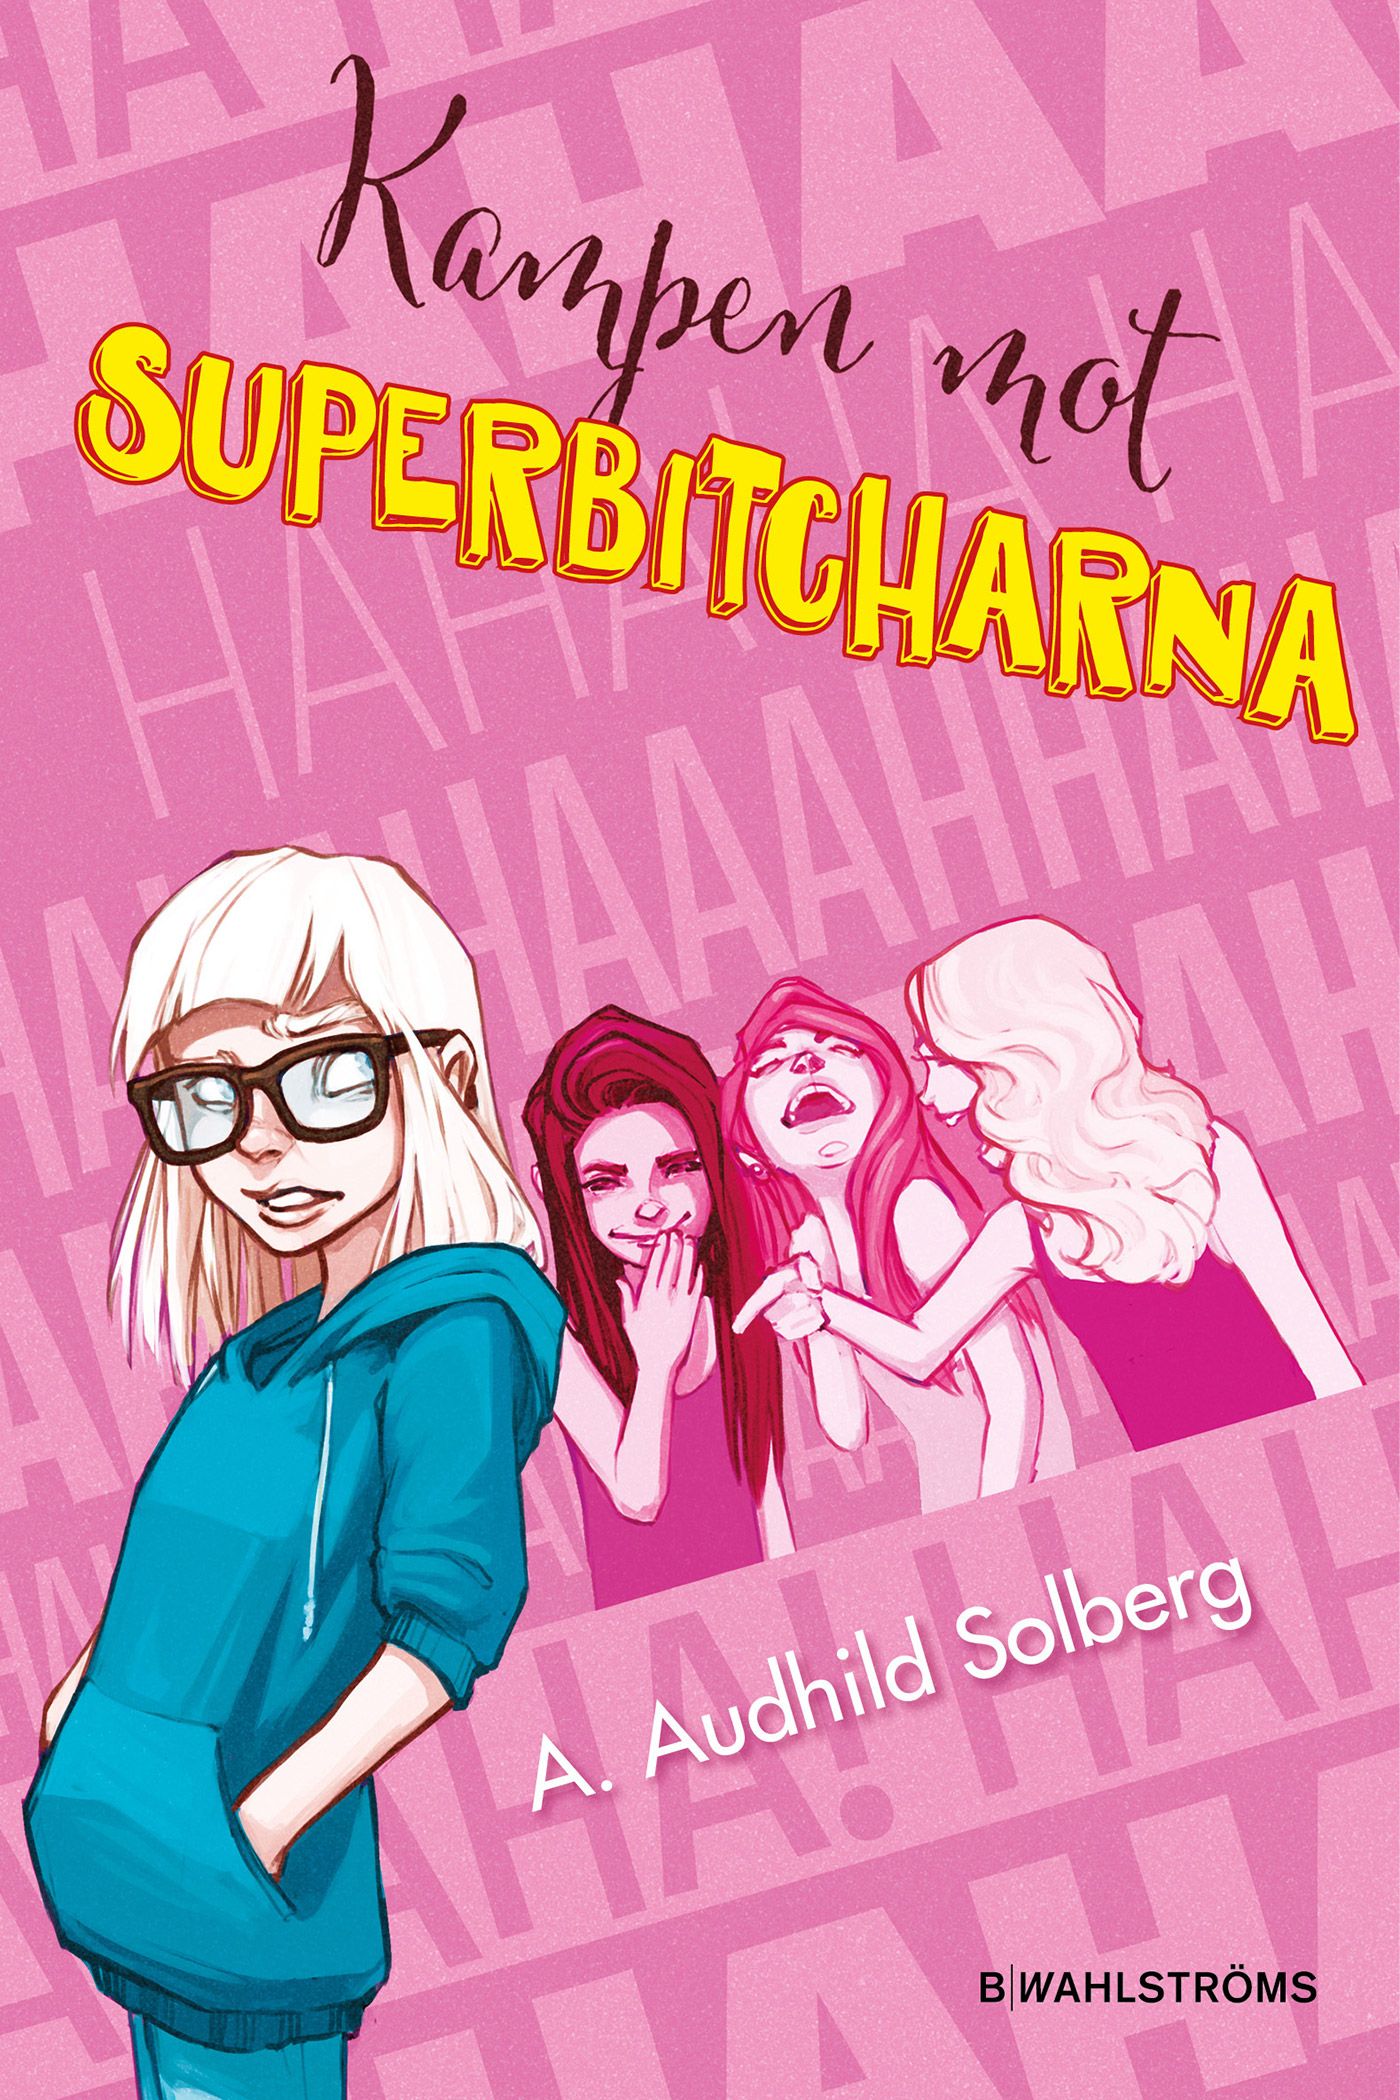 Superbitcharna 1 - Kampen mot superbitcharna, e-bok av A. Audhild Solberg